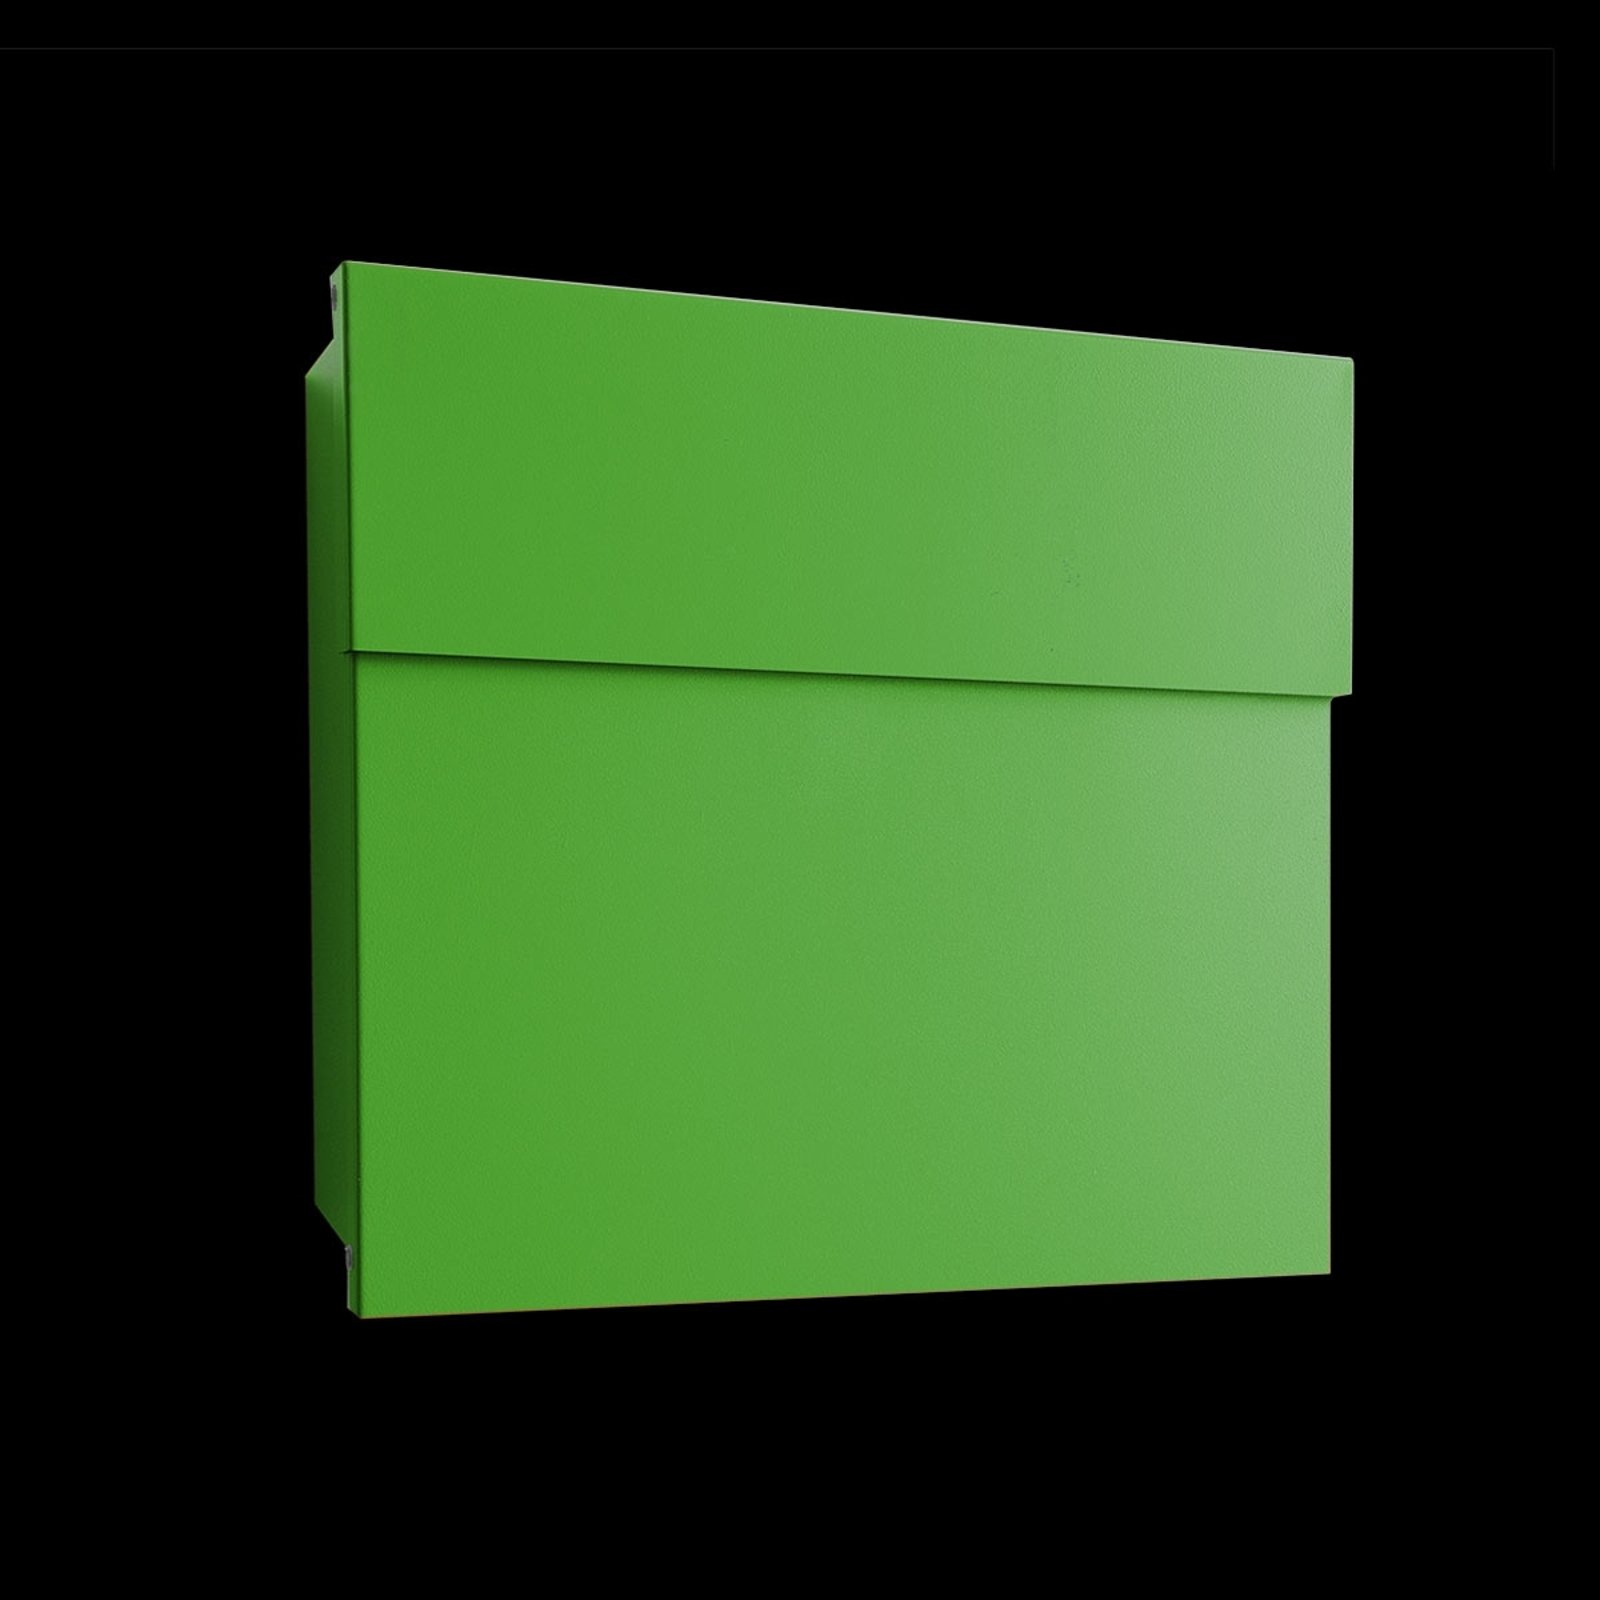 Letterman IV designer letterbox, green